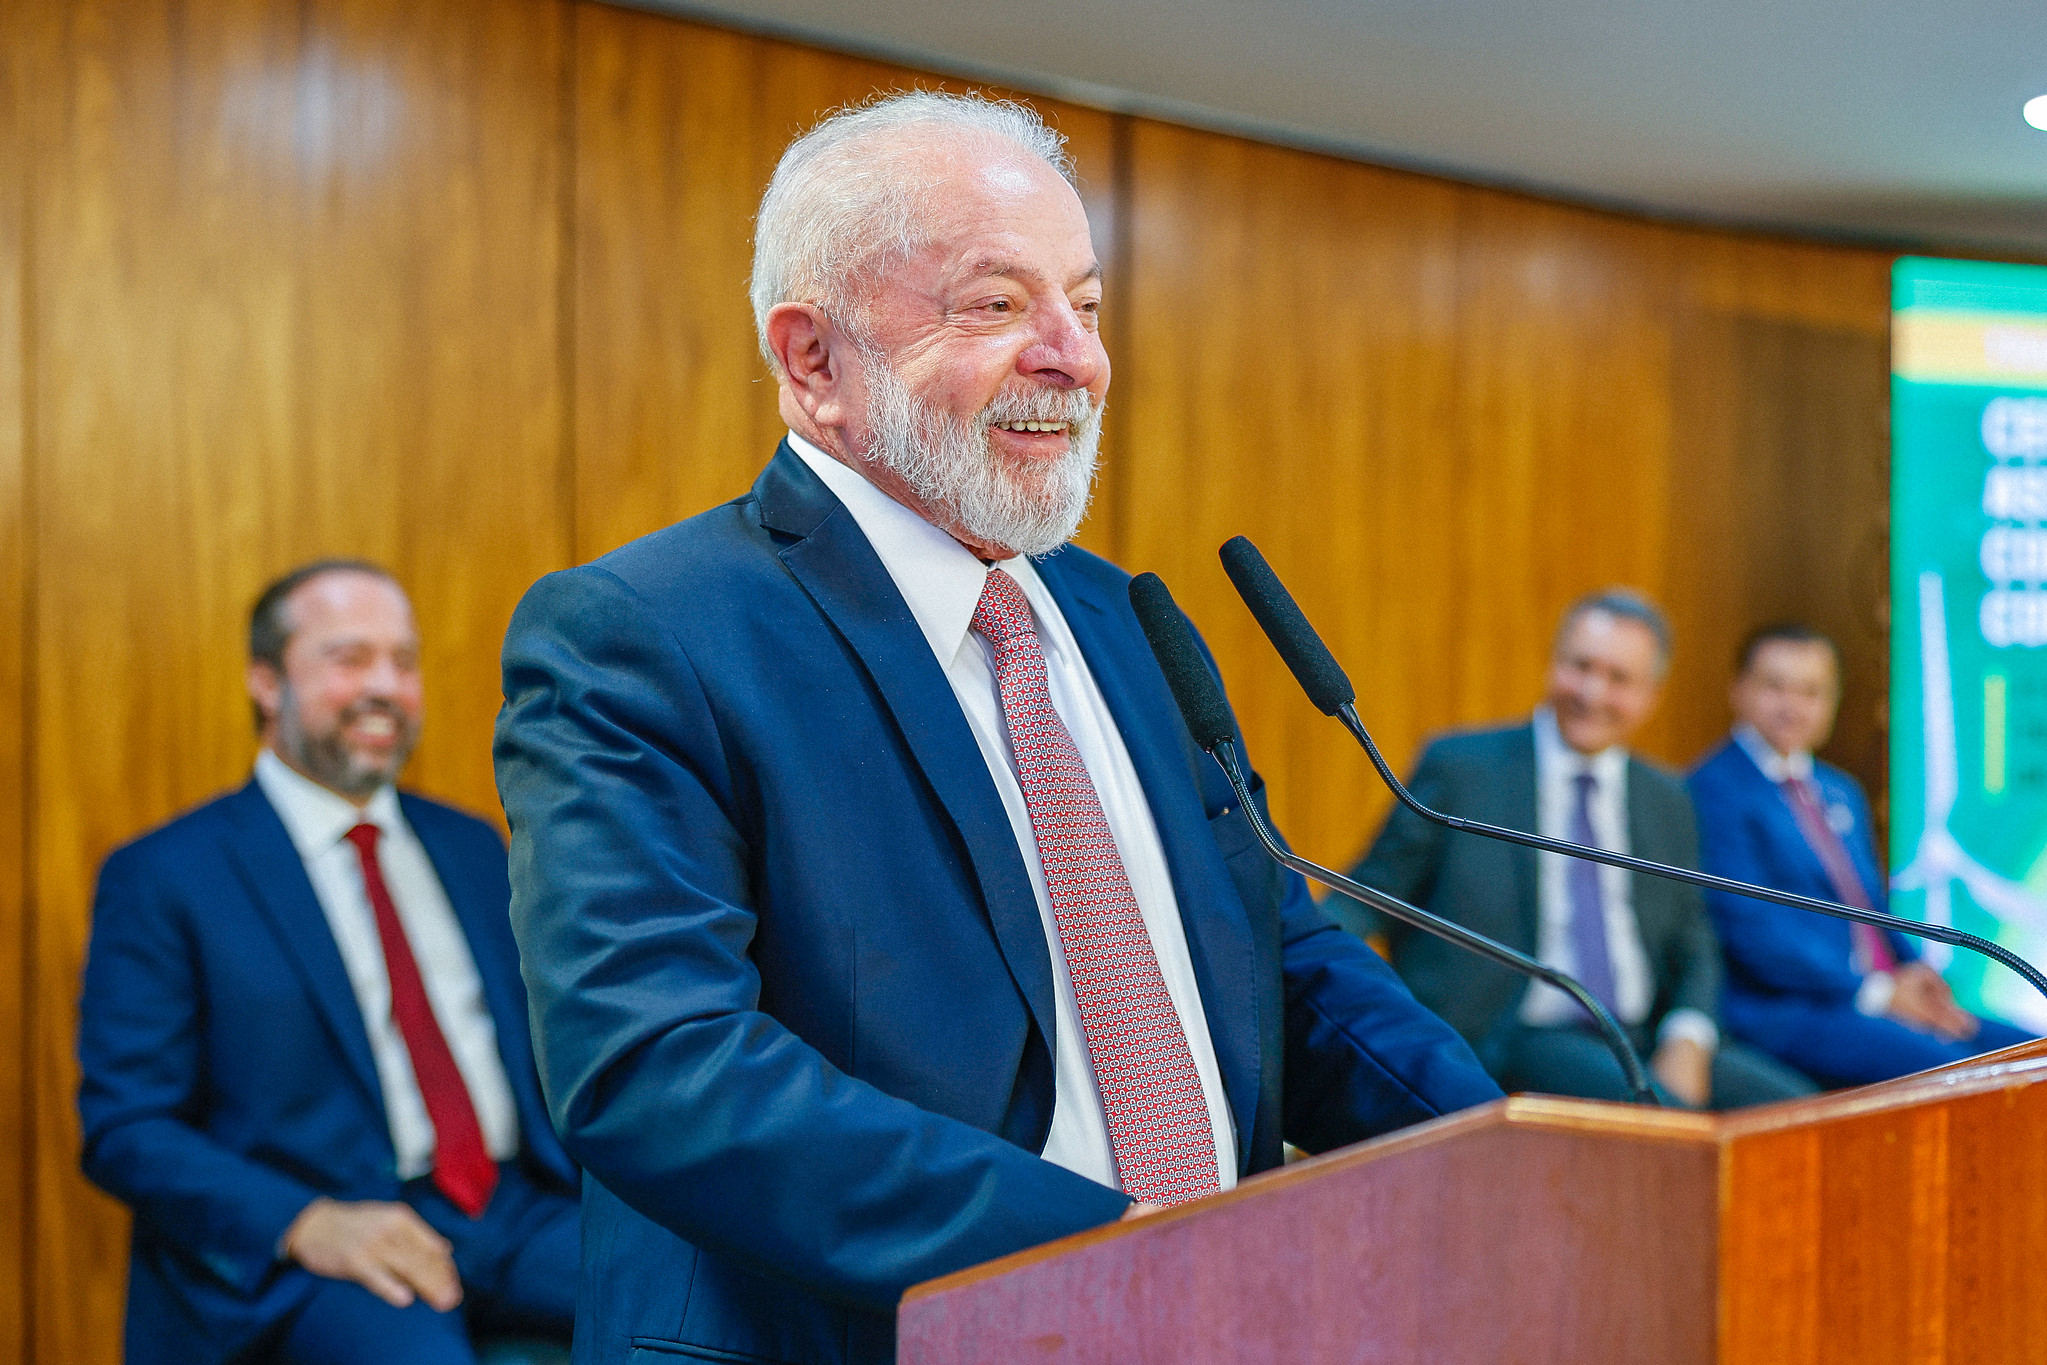 Brasil pode se tornar a Arábia Saudita da energia limpa, diz Lula (PT). Na imagem: Presidente Lula (PT) durante a cerimônia de assinatura dos contratos do 1º Leilão de Transmissão de 2023, no Palácio do Planalto, em Brasília (DF), em 27/9/23 (Foto: Ricardo Stuckert/PR)